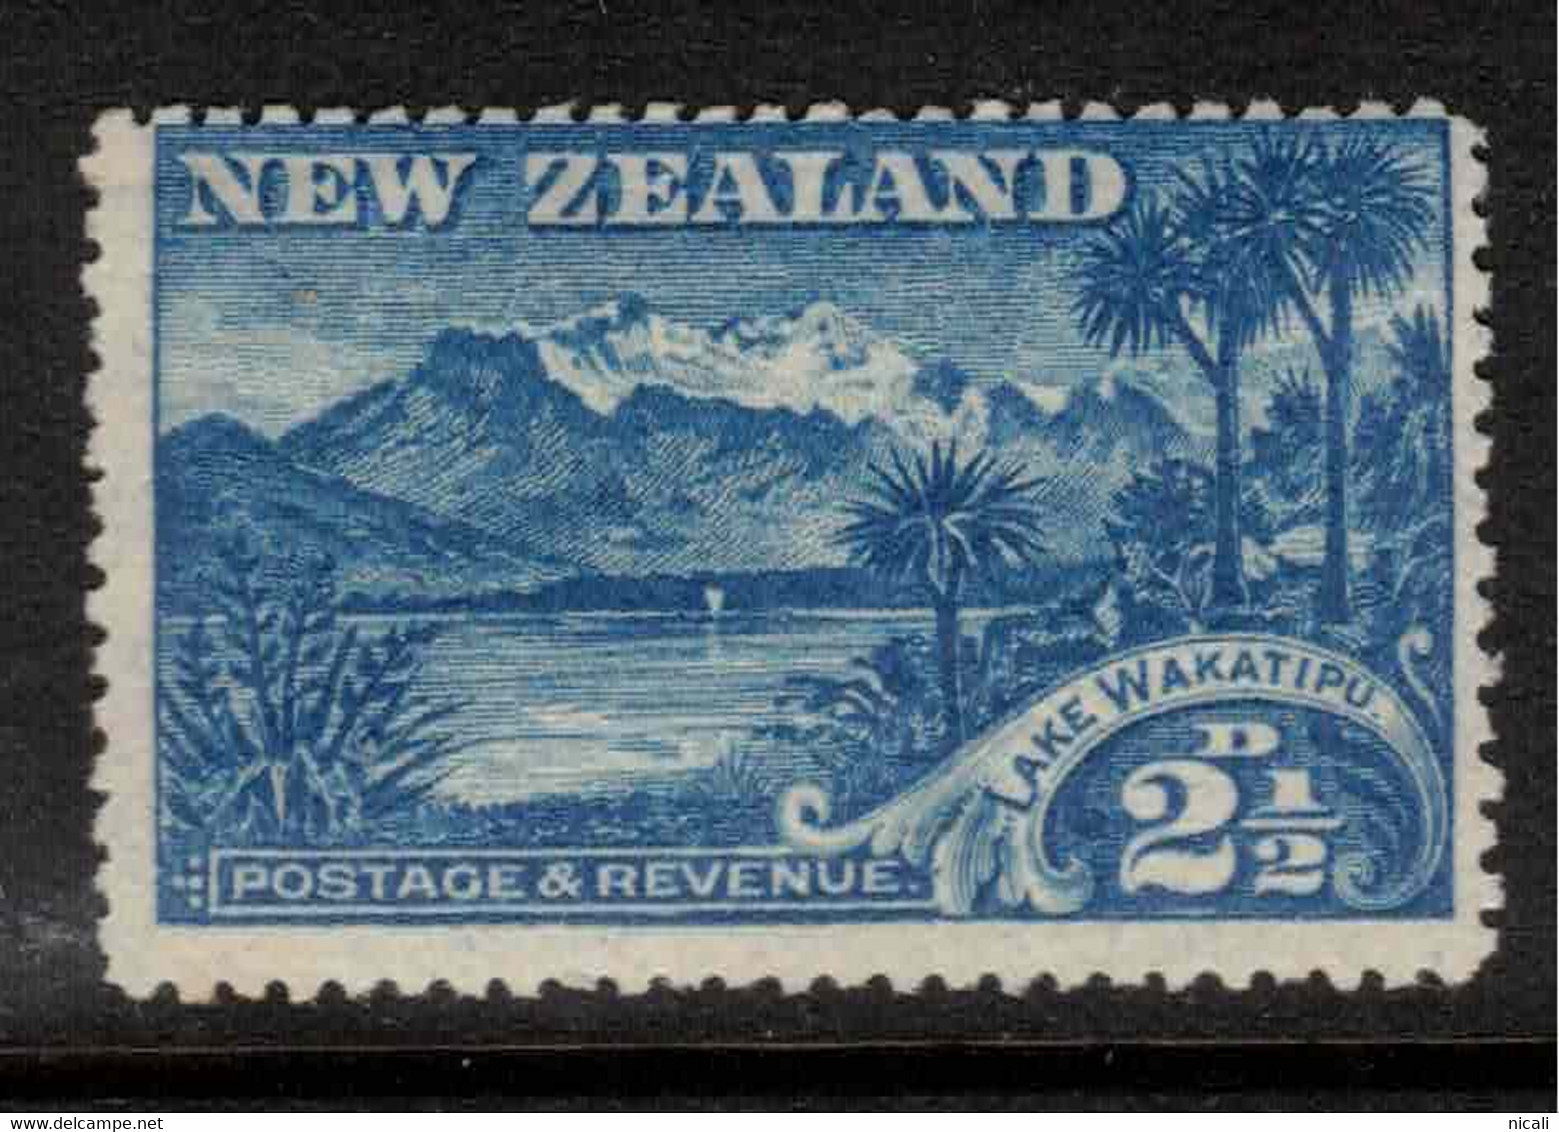 NZ 1898 2 1/2d Blue Lake Wakitipu SG 320 UNHM #AIP10 - Nuevos